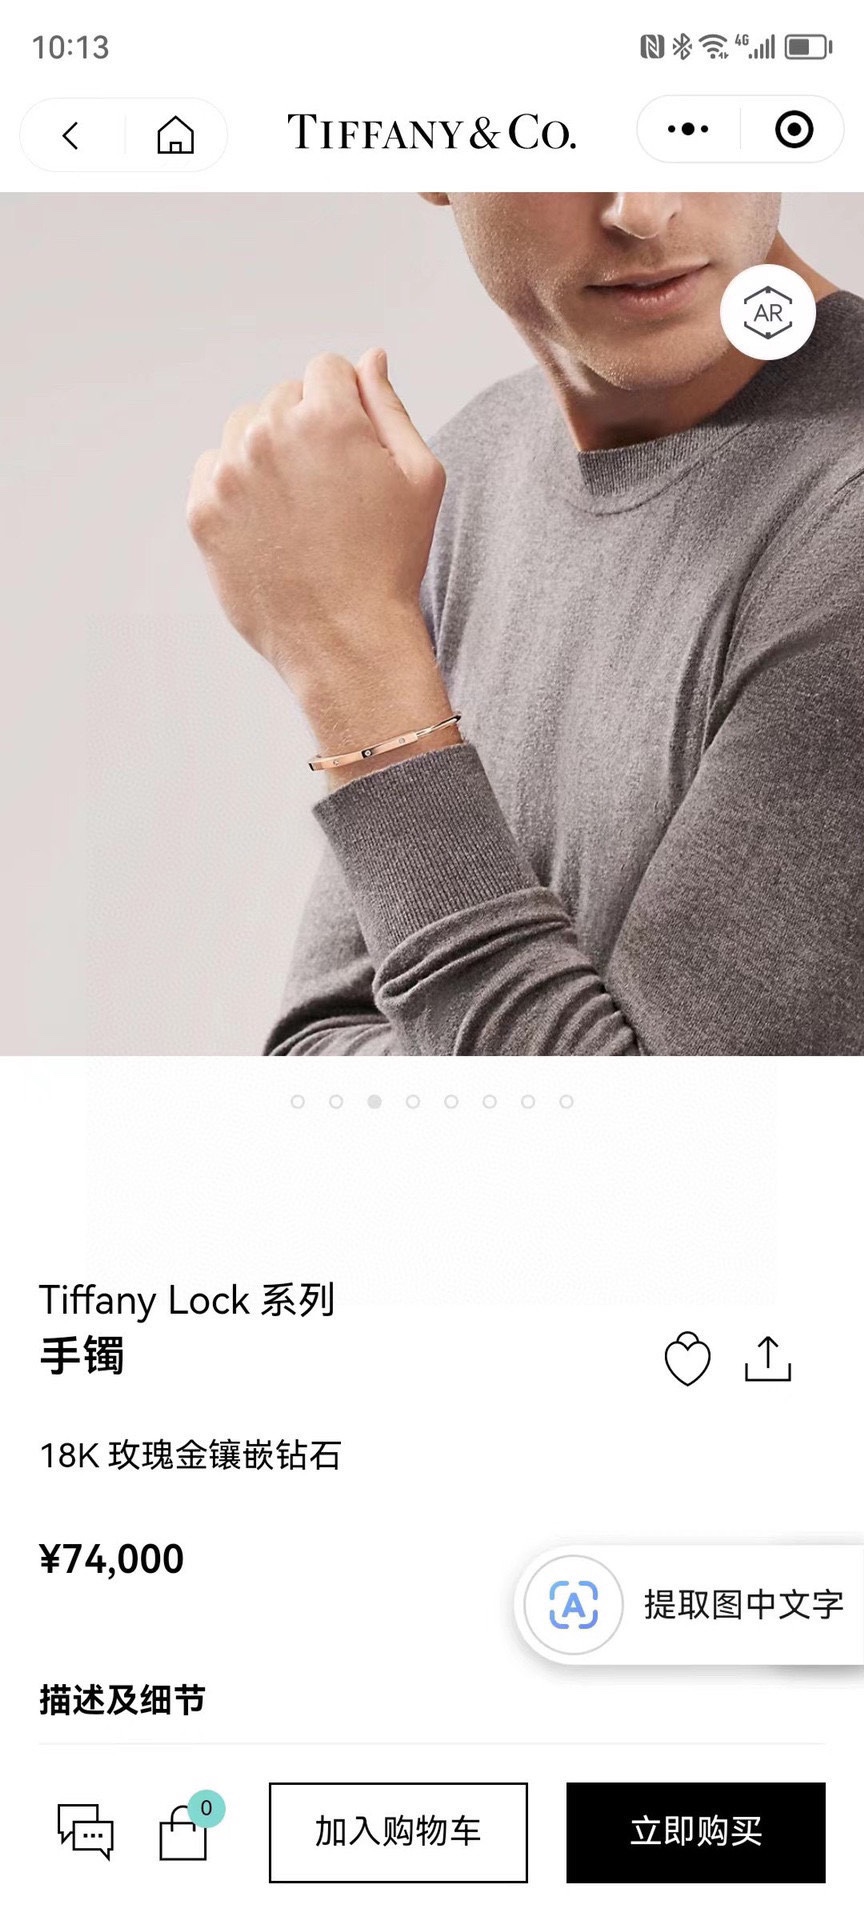 Tiffany蒂芙尼23c新款火爆登场U型锁间钻手镯欧美范十足人手必备超精工打造电镀18k金防过敏处理三